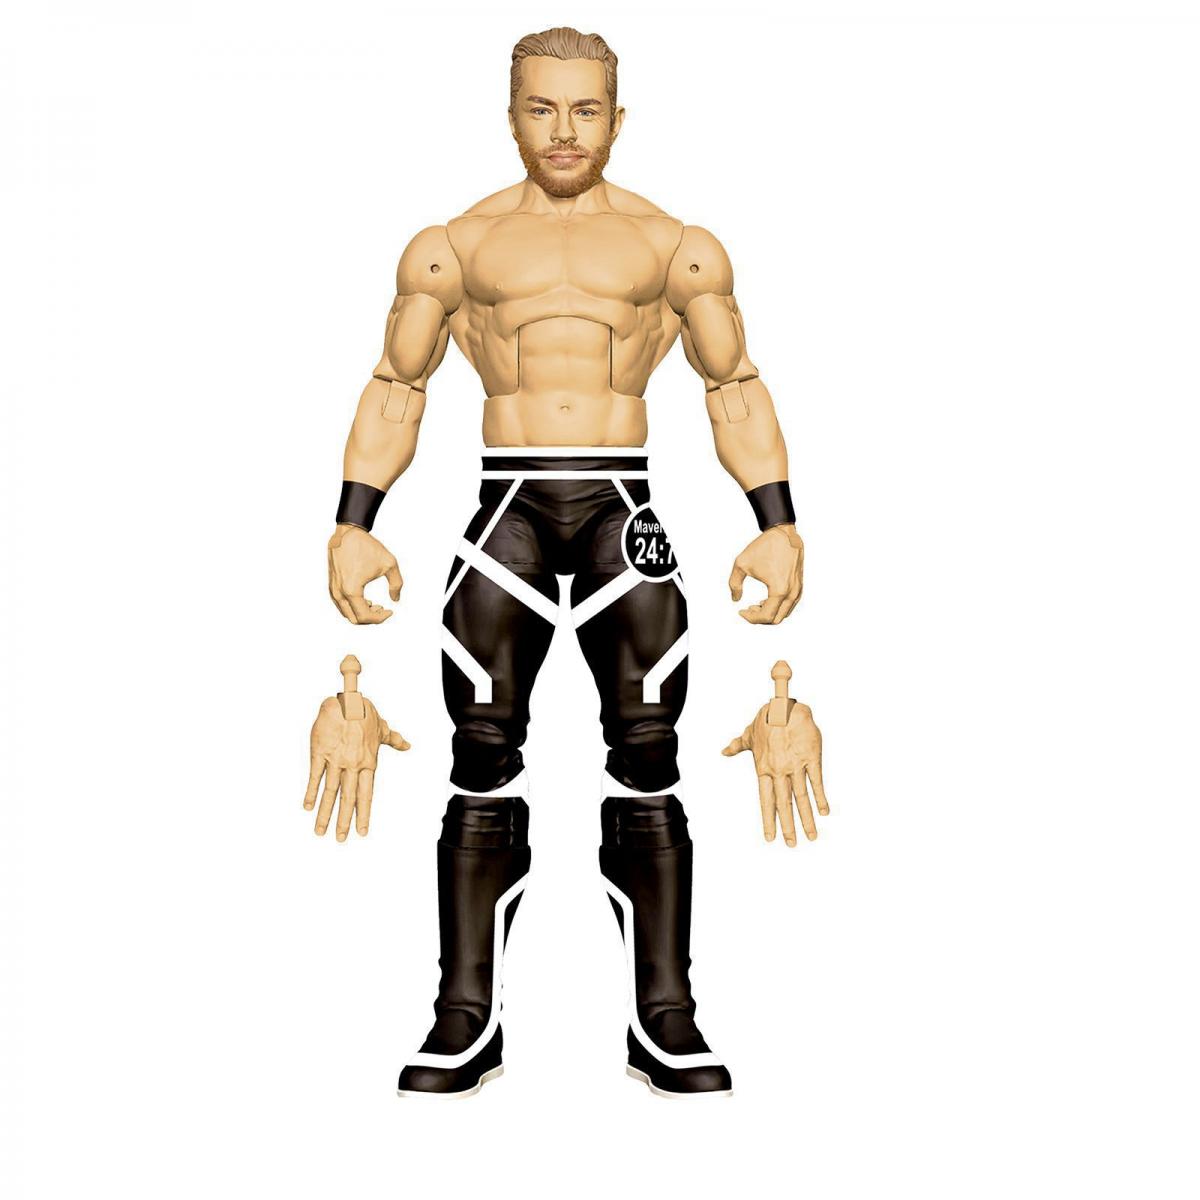 2020 WWE Mattel Elite Collection Series 78 Drake Maverick